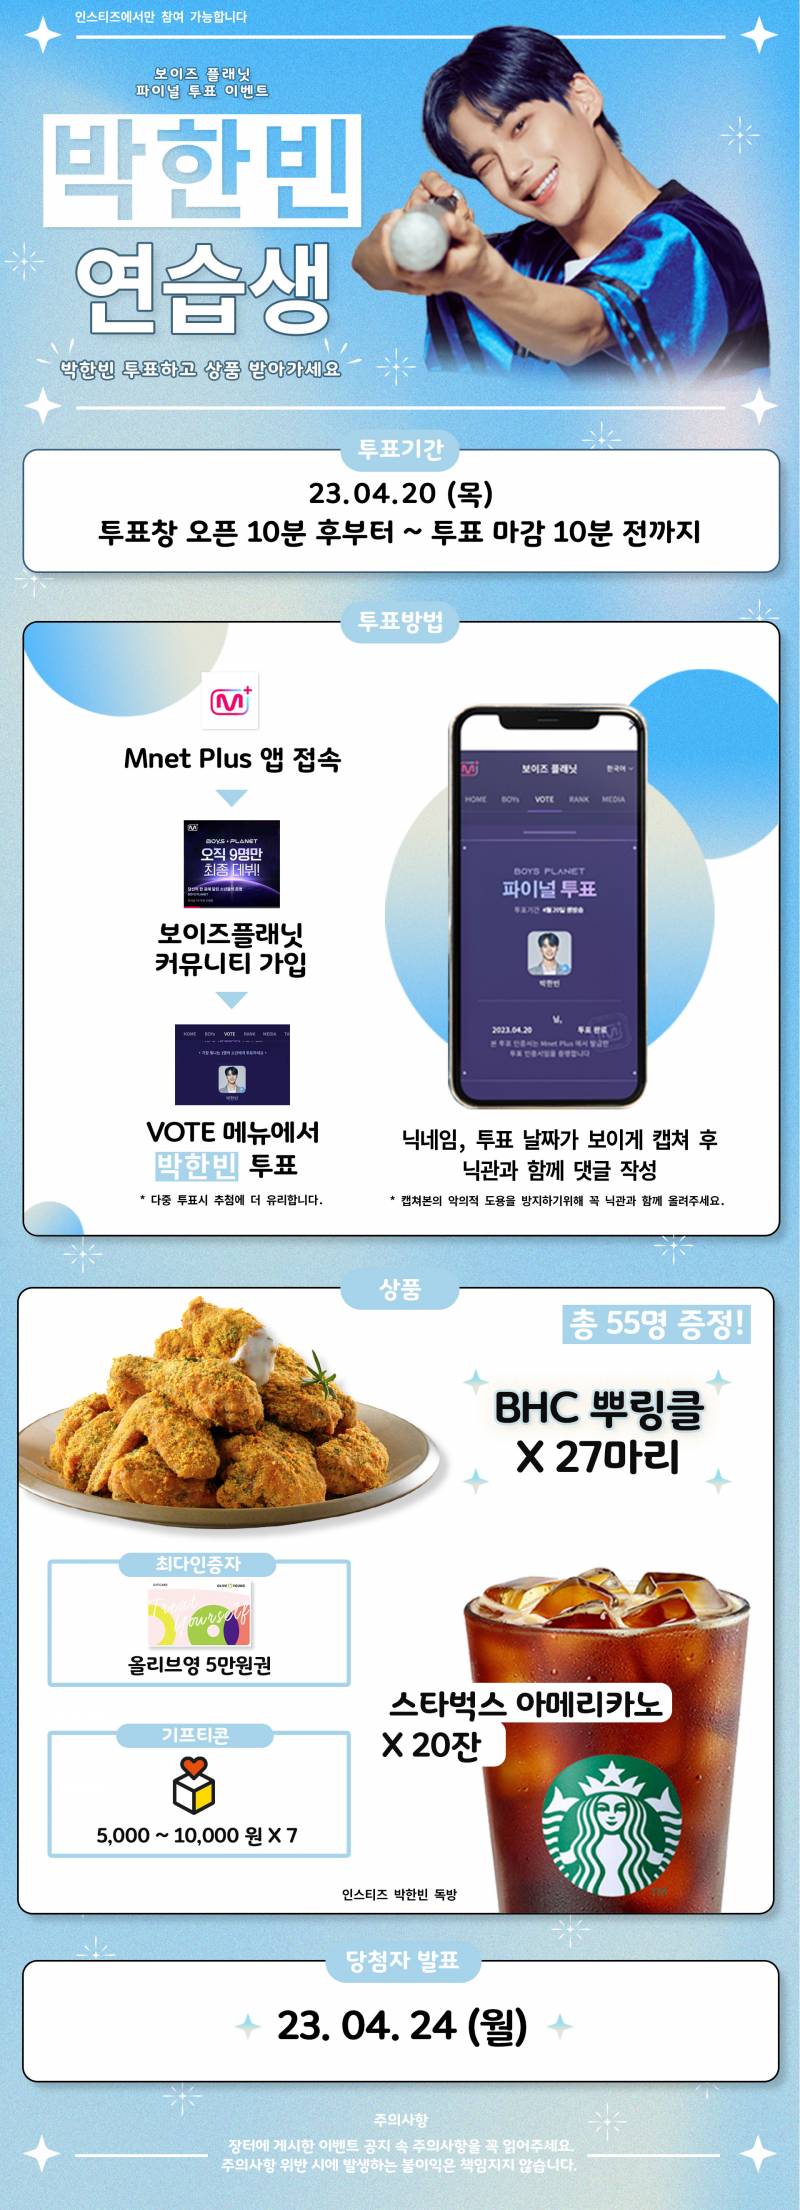 박한빈) 💙 박한빈 파이널 생방송 투표 이벤트 💙 | 인스티즈